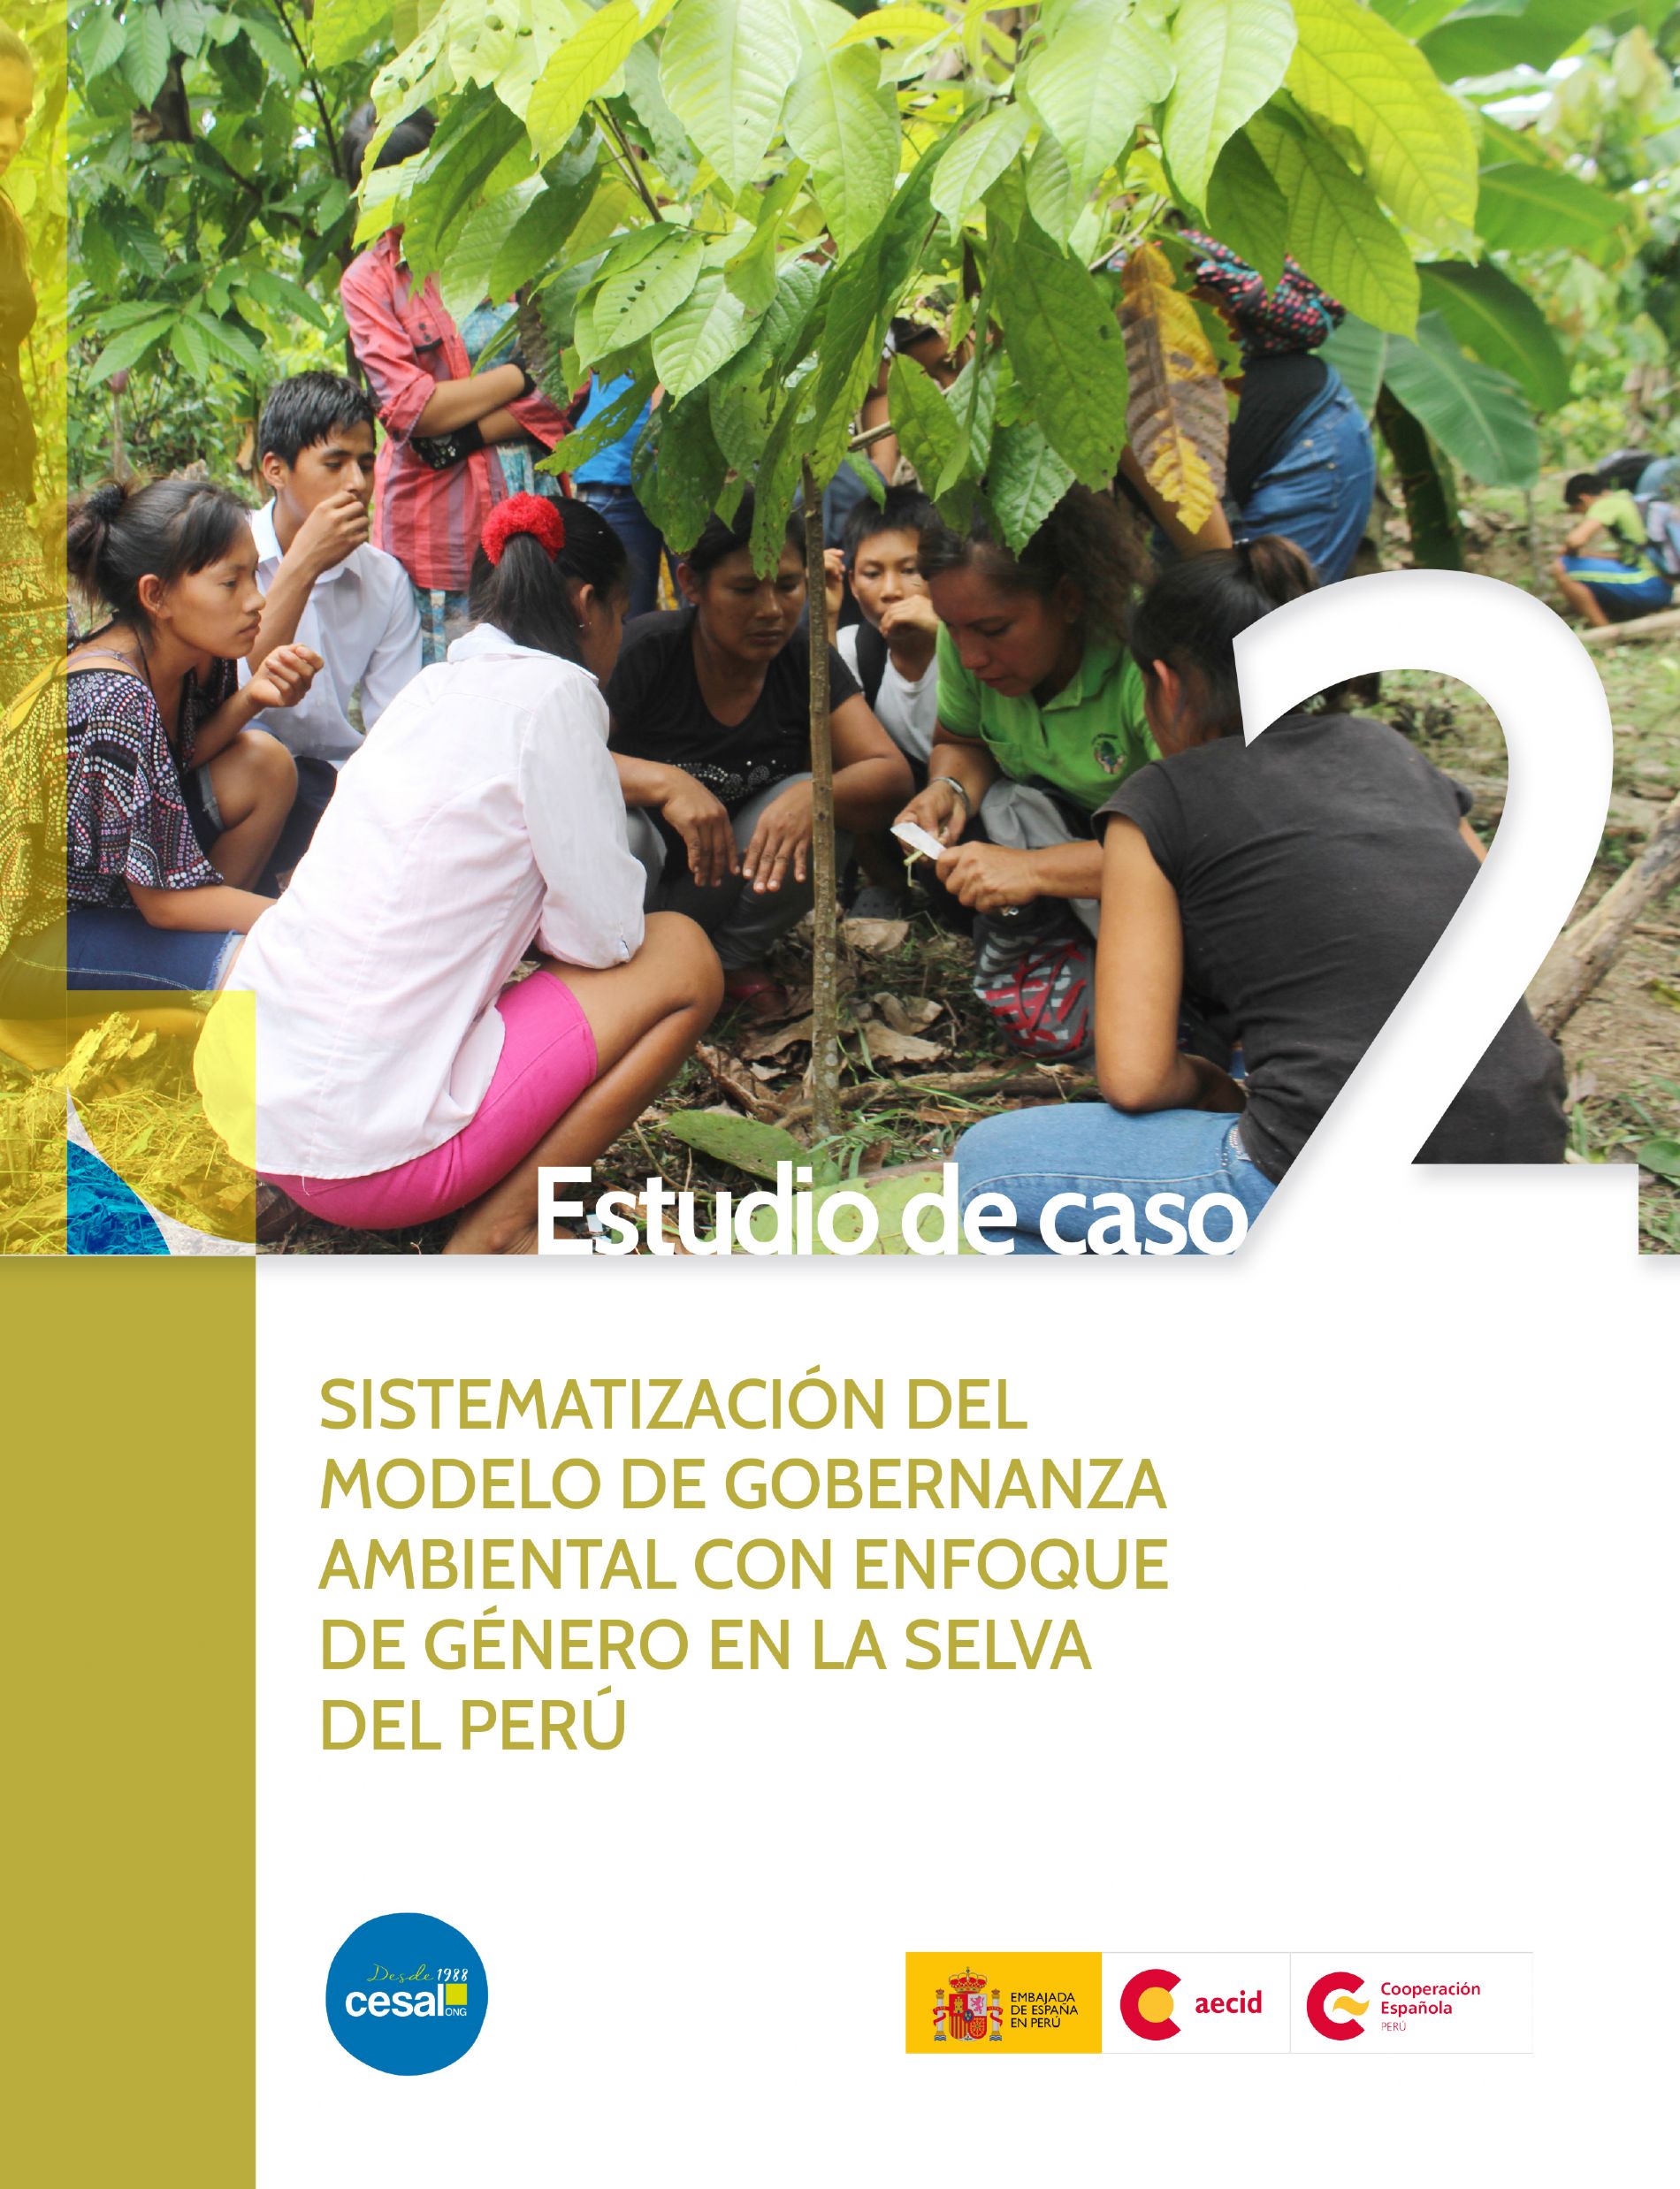 Sistematización del Modelo de Gobernanza Ambiental con enfoque de género en la selva de Perú